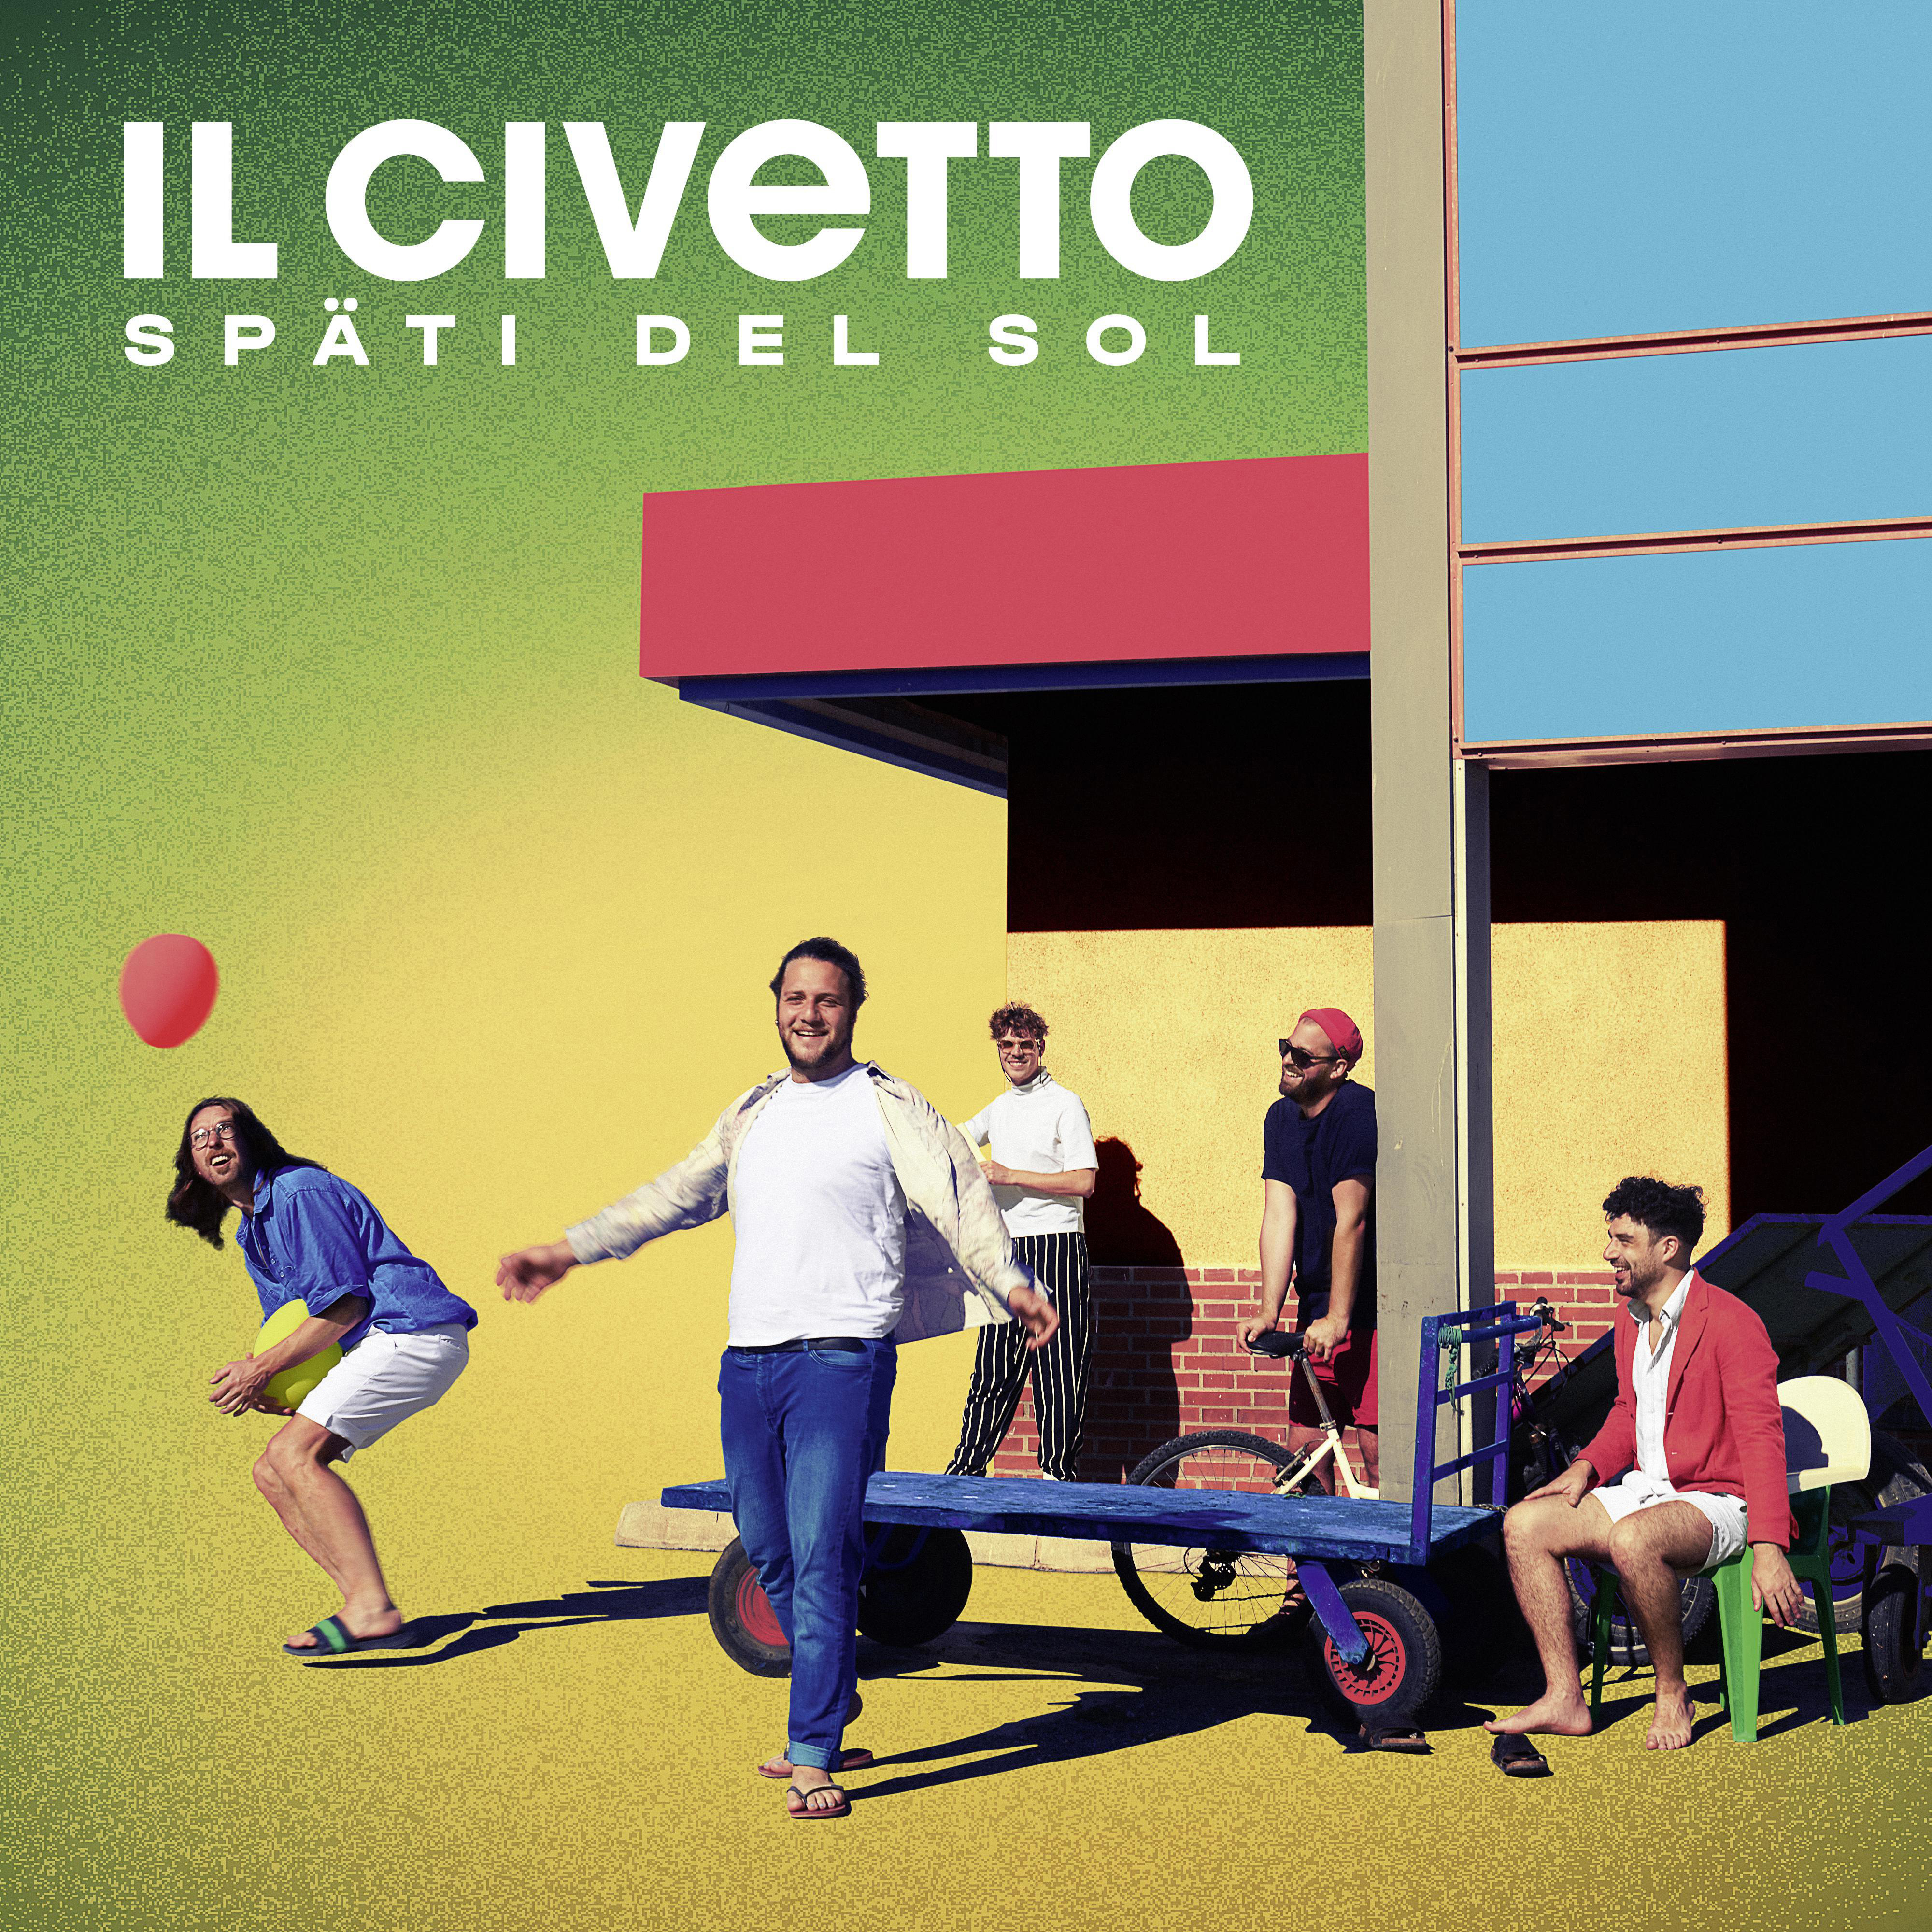 il Civetto (Vinyl) - Sol del - Späti